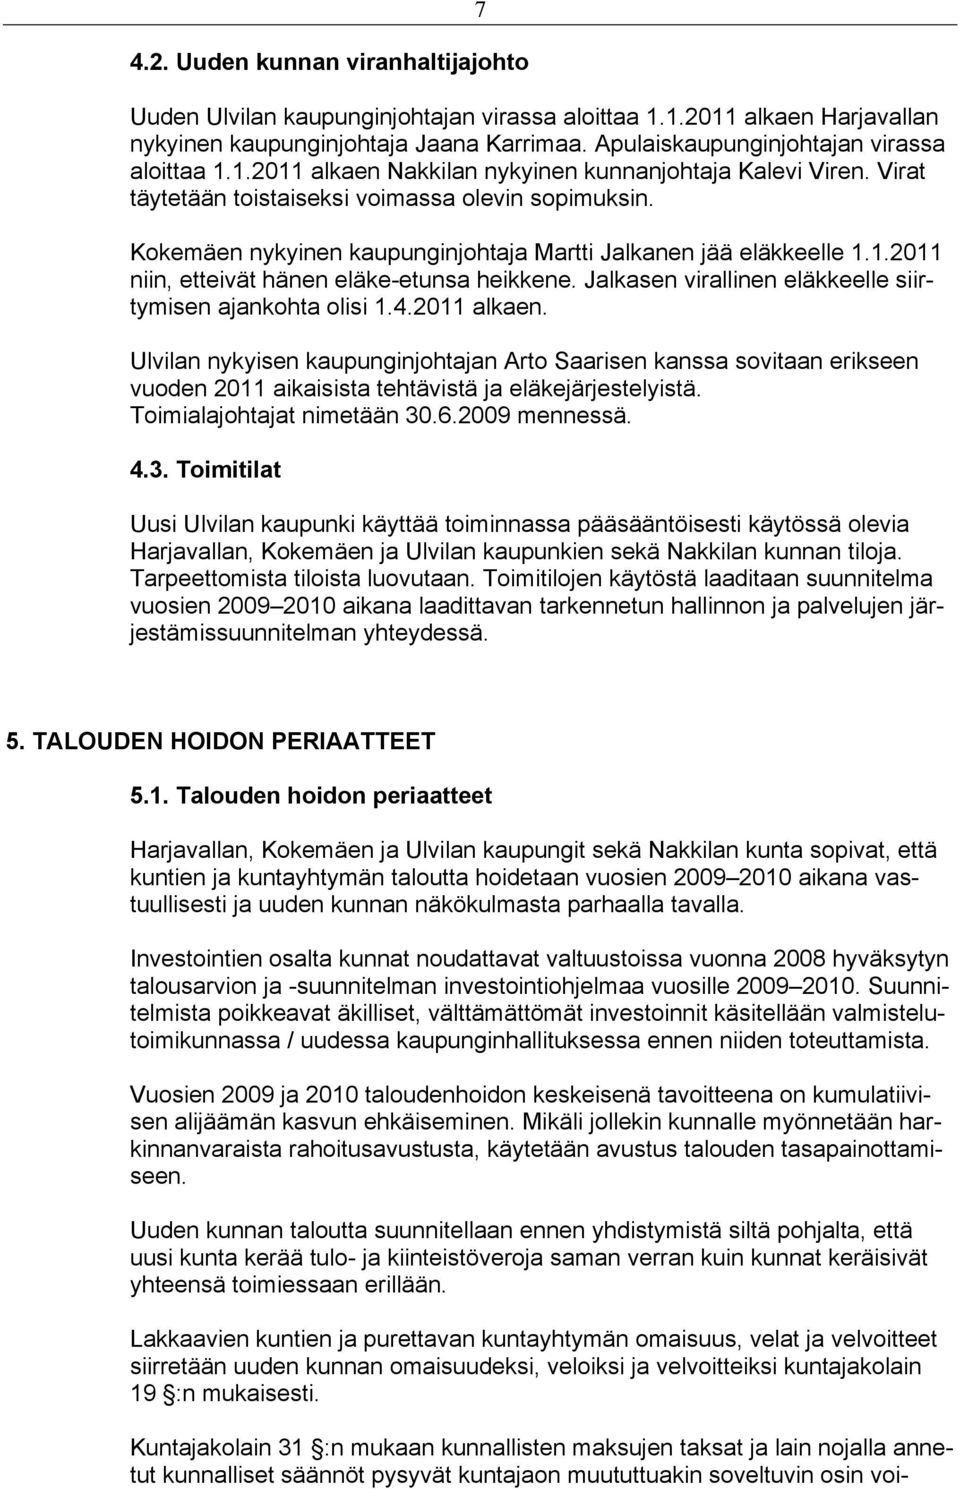 Kokemäen nykyinen kaupunginjohtaja Martti Jalkanen jää eläkkeelle 1.1.2011 niin, etteivät hänen eläke-etunsa heikkene. Jalkasen virallinen eläkkeelle siirtymisen ajankohta olisi 1.4.2011 alkaen.